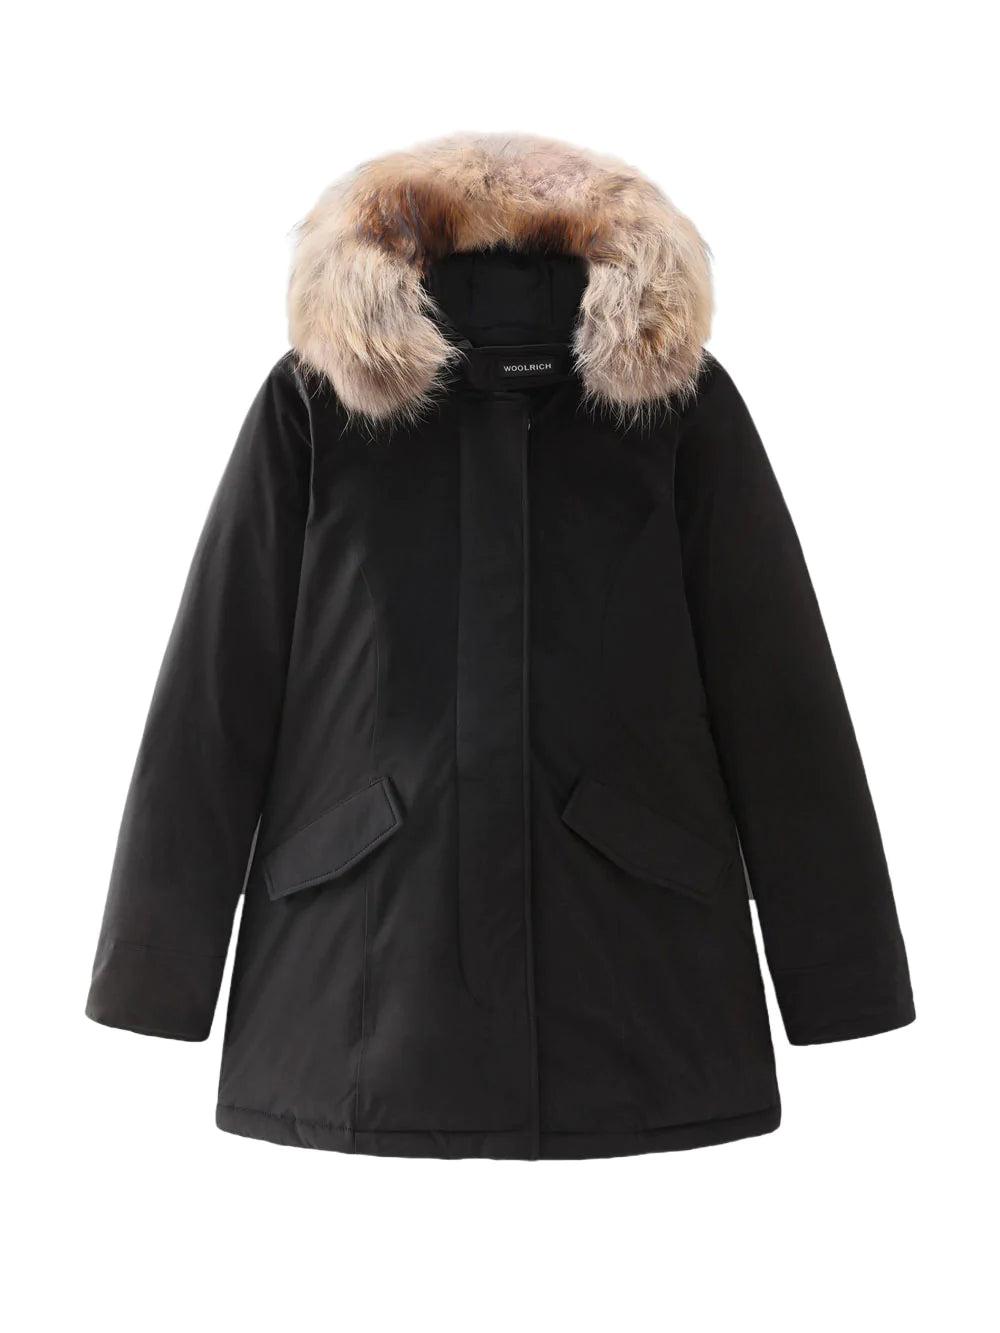 Arctic High Collar Parka 24S Women Clothing Coats Parkas 